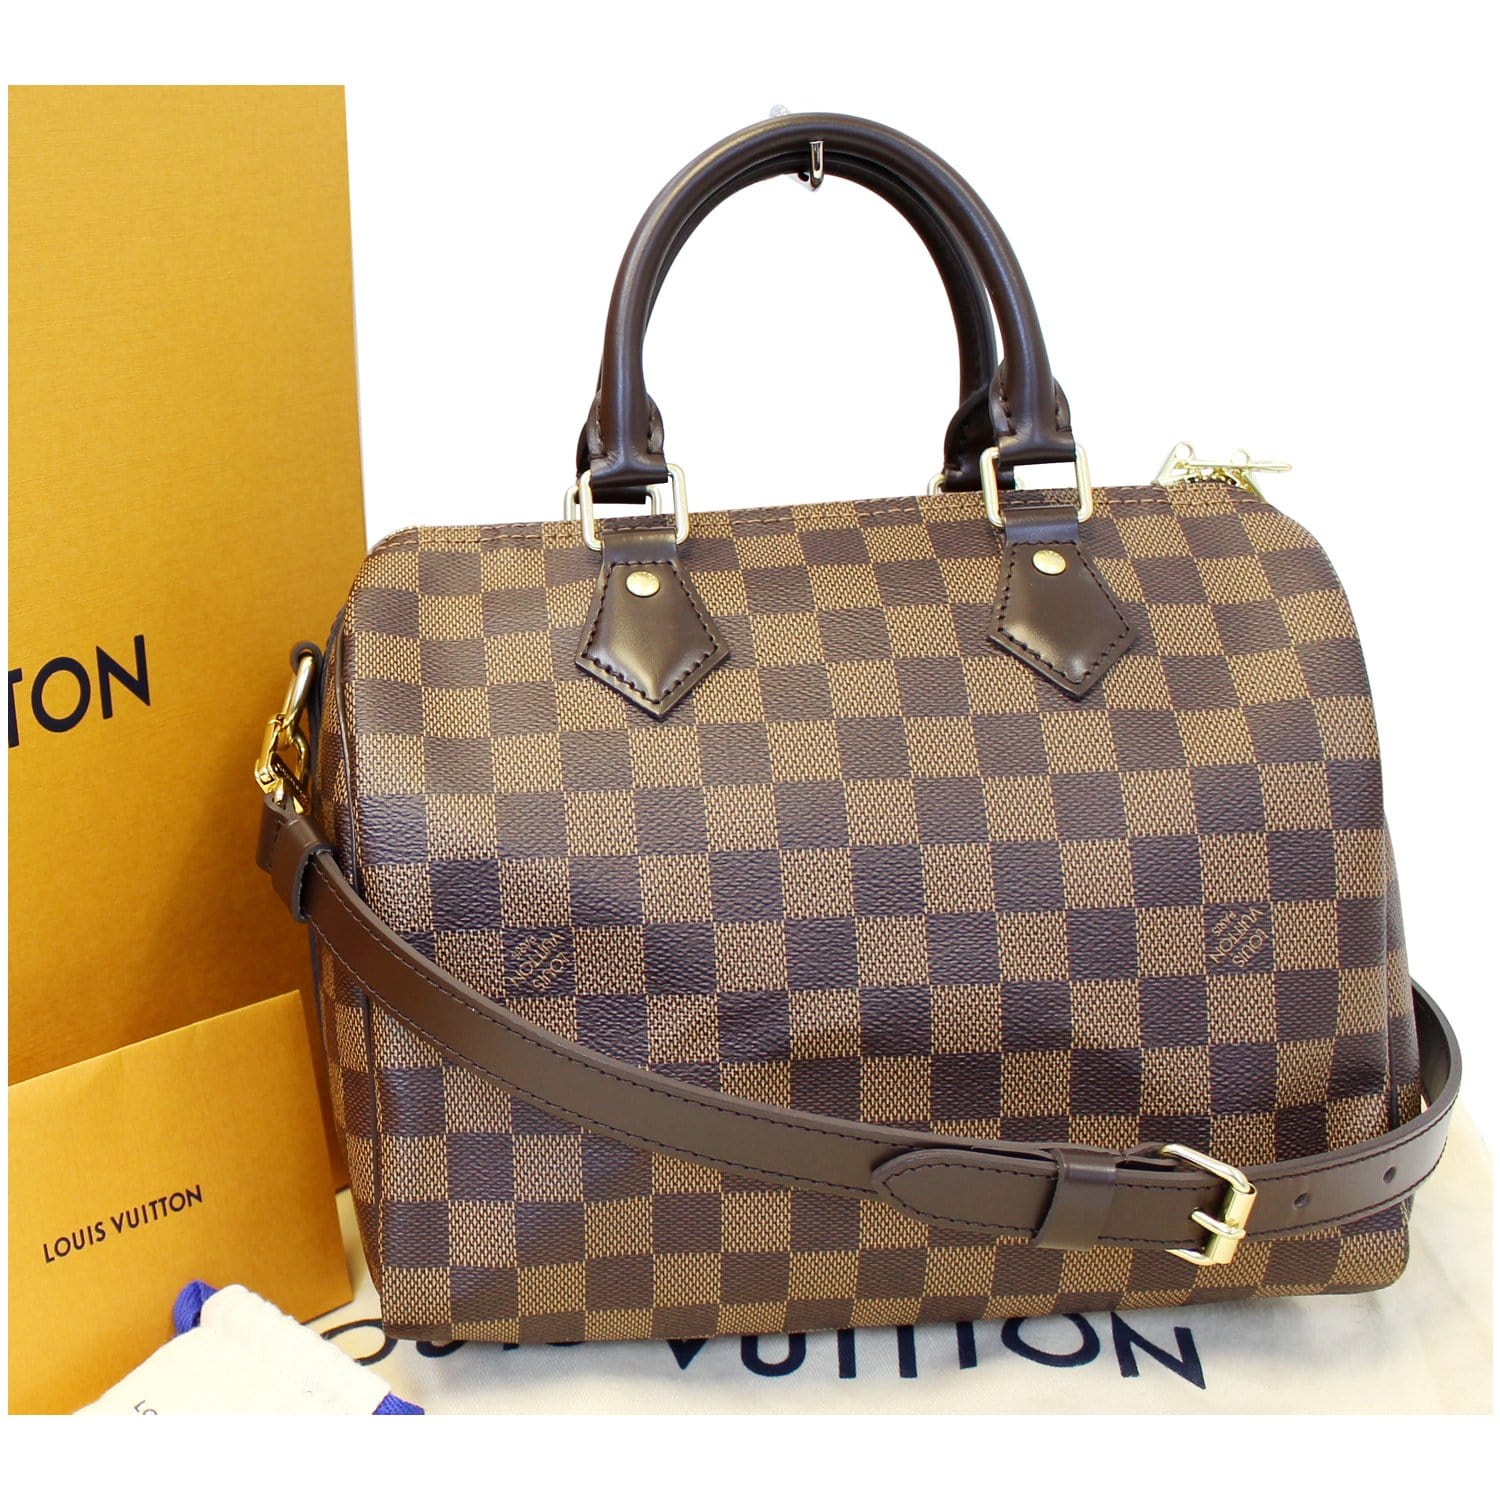 I love this bag!! Louis Vuitton Speedy Bandouliere 25 in Damier Ebene   Louie vuitton, Louis vuitton handbags, Louis vuitton speedy bandouliere